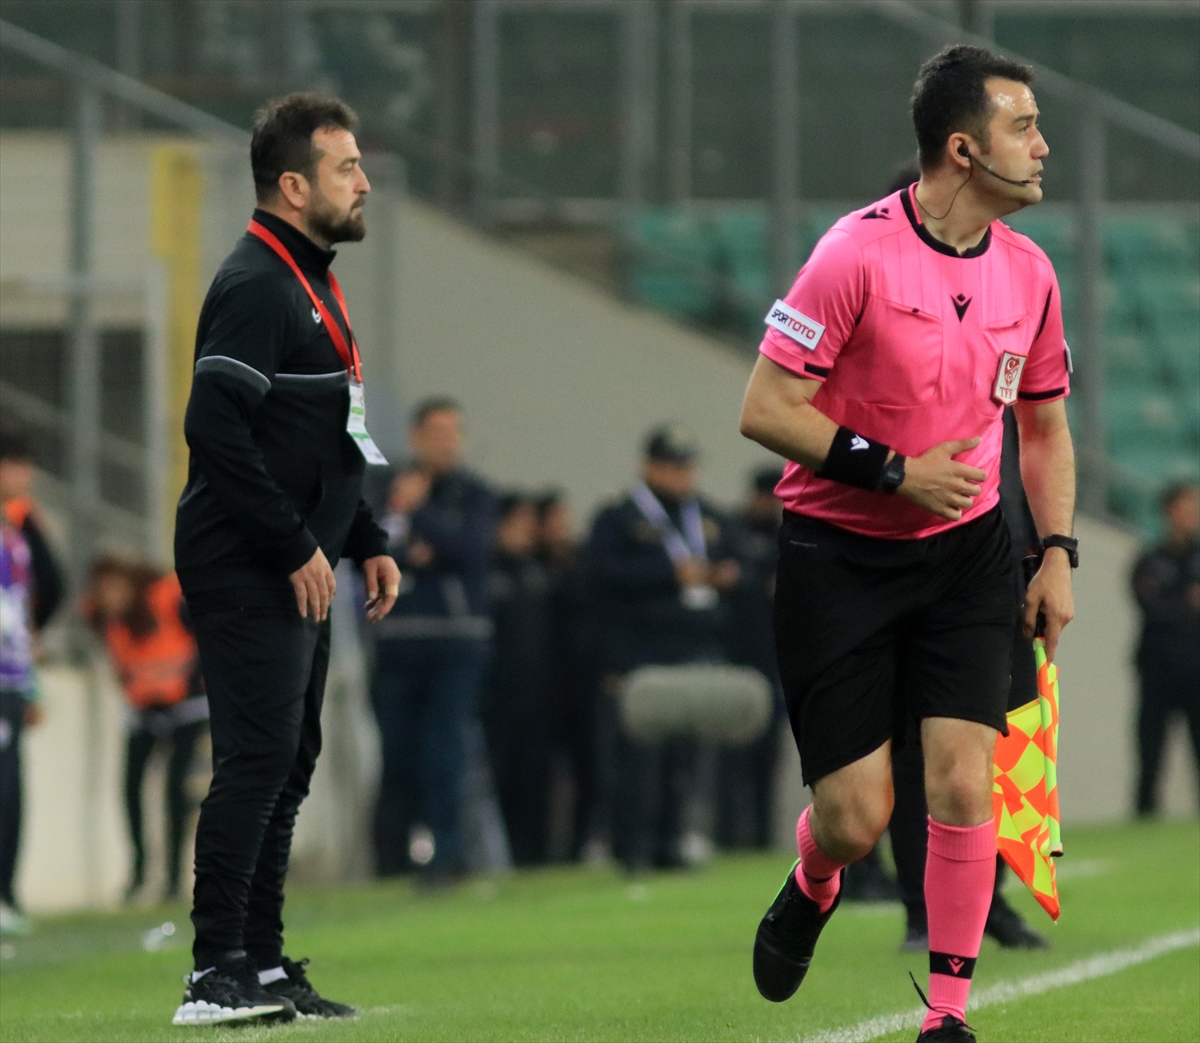 Bursaspor-Altaş Denizlispor maçının ardından